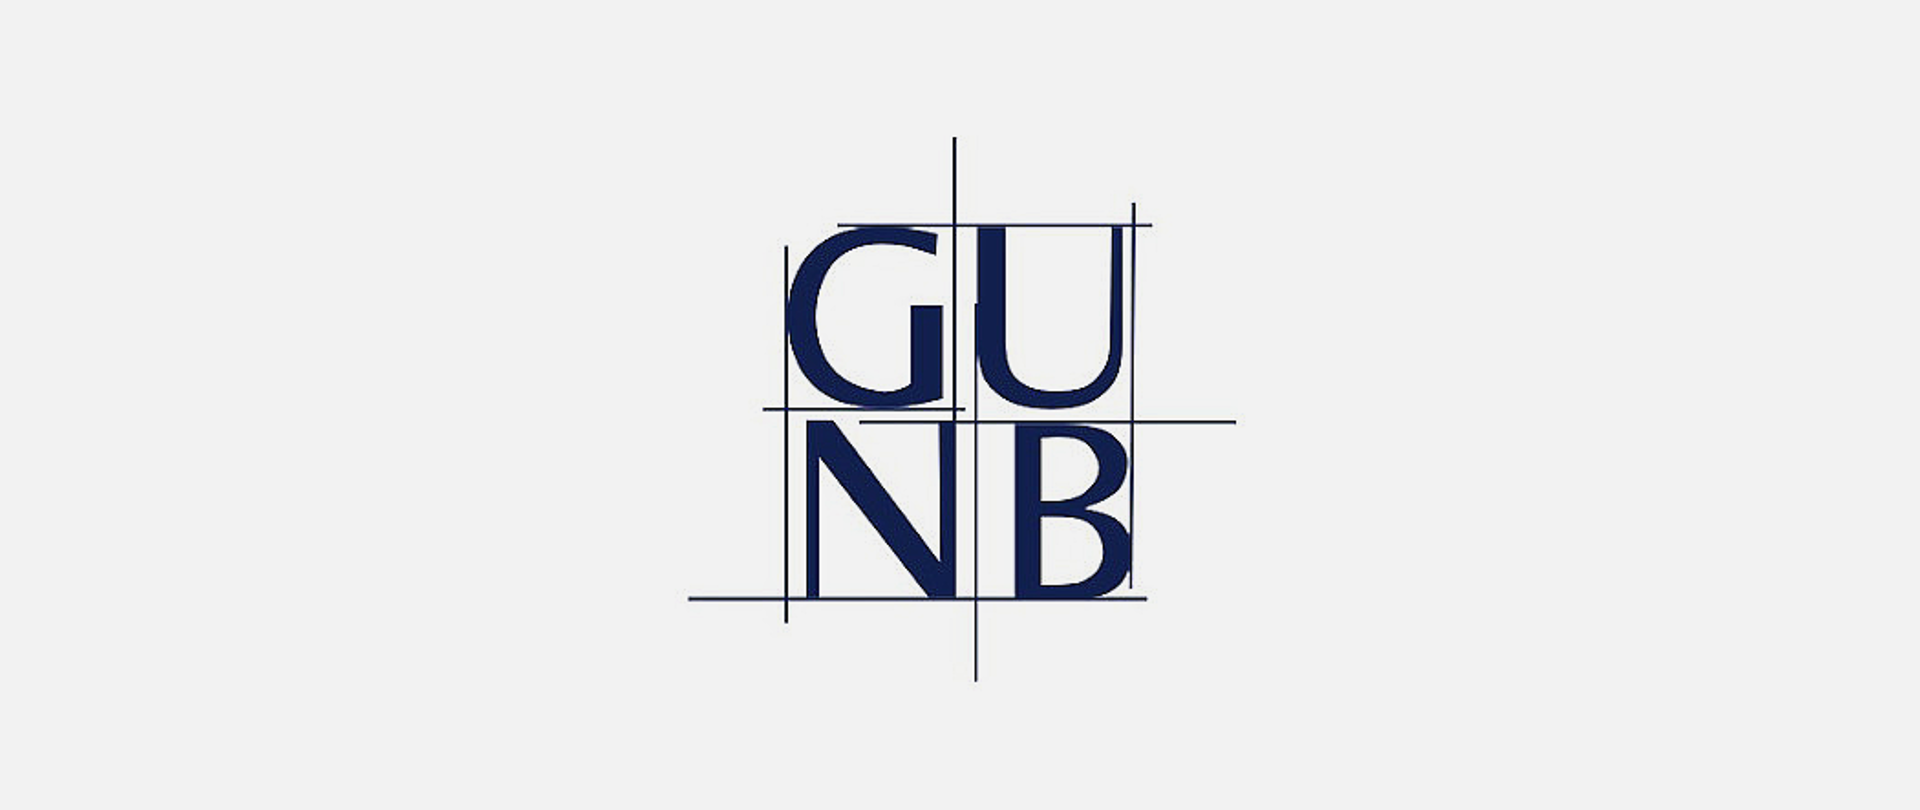 Logo - litery GUNB na białym tle, wpisane w prostopadłe kreski, tworzące kształt zbliżony to kwadratu